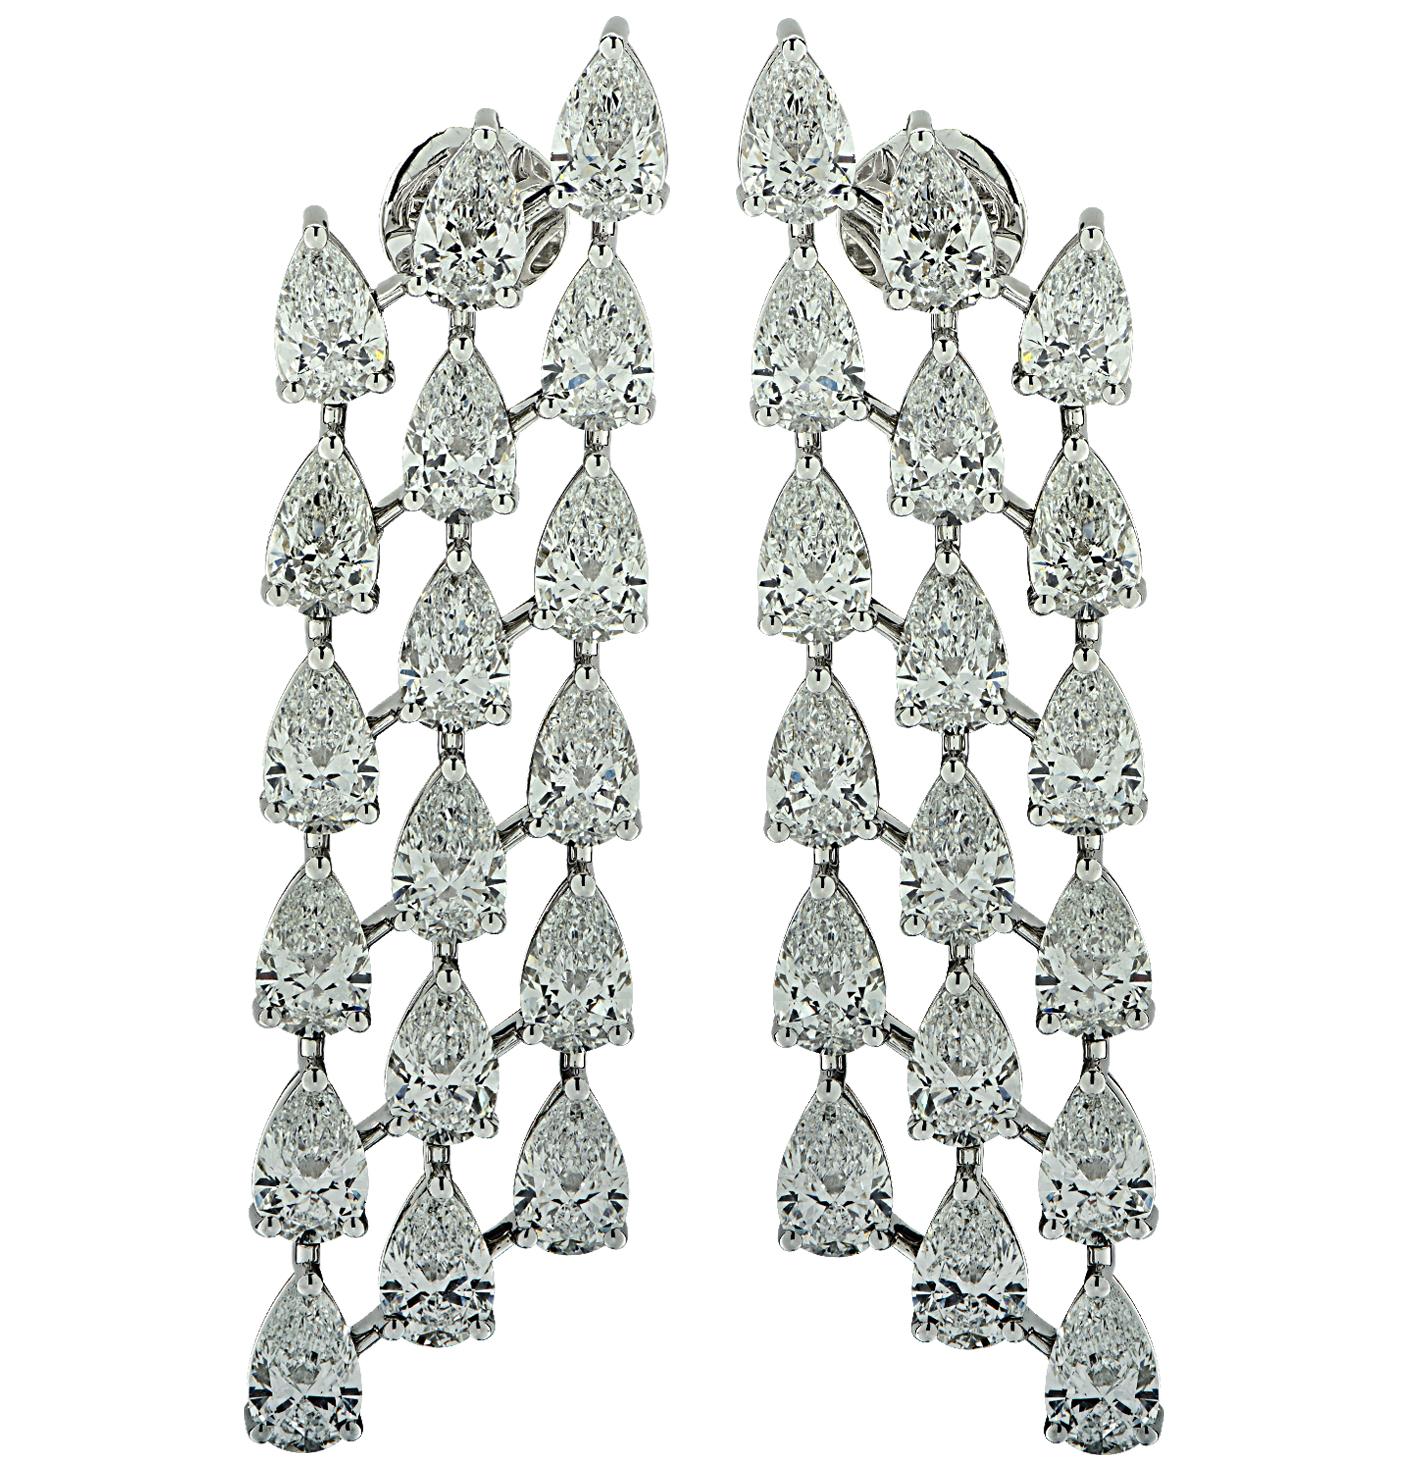 Sensationelle Vivid Diamonds Dangle Earrings mit 36 GIA-zertifizierten birnenförmigen Diamanten mit einem Gesamtgewicht von 14,50 Karat, Farbe D-F, Reinheit SI1, in feiner Handarbeit aus Platin gefertigt. Jeder einzelne spektakuläre Diamant wurde